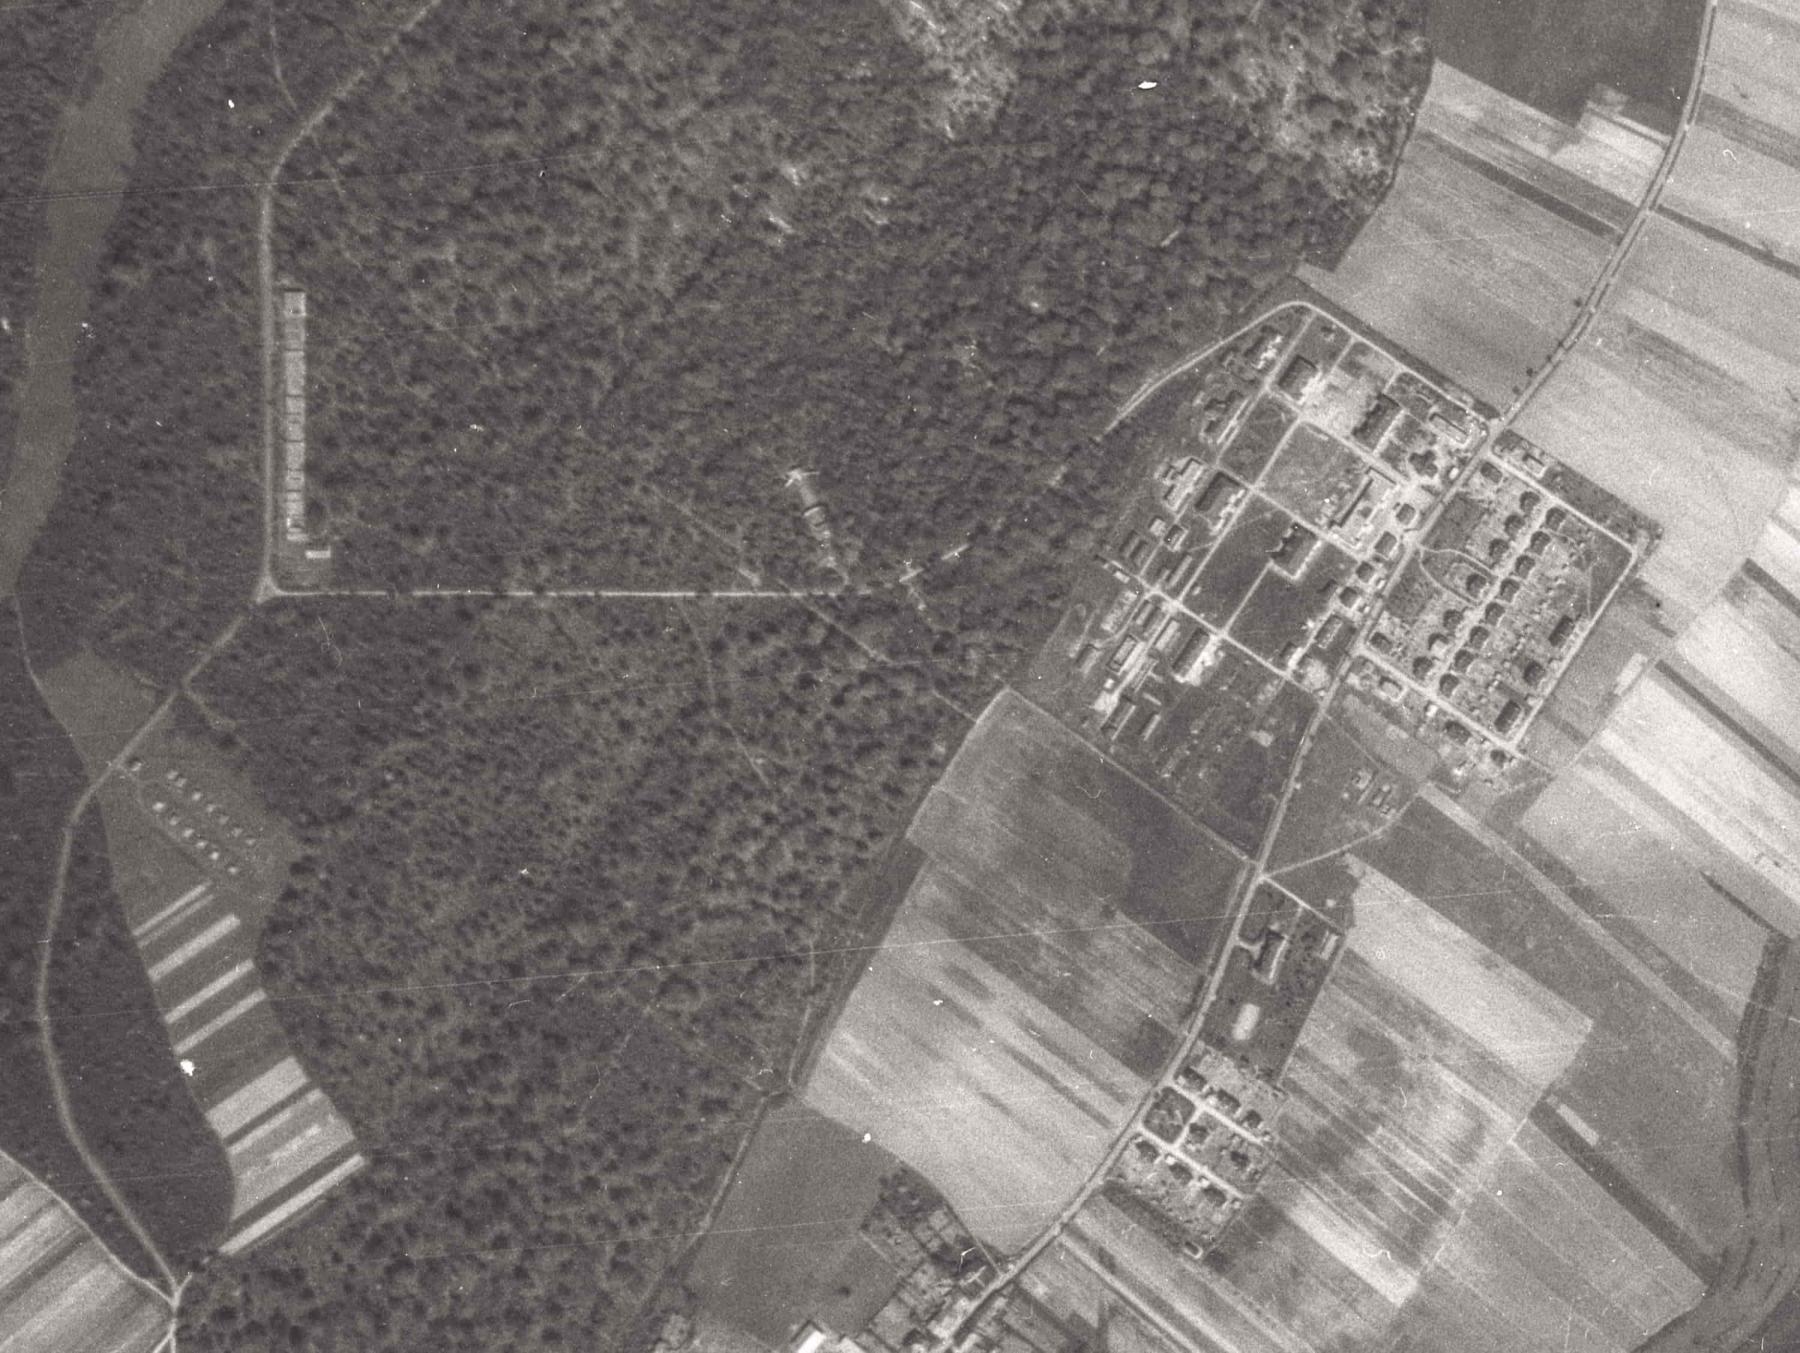 Ligne Maginot - ERROUVILLE - (Camp de sureté) - Vue aérienne 1948
A gauche dans la foret, le dépôt de munitions, le stand de tir 200m et le stand de tir forteresse.
A droite, de haut en bas, la cité sous-officiers, le dépôt du génie, le mess hôtel et la cité officier